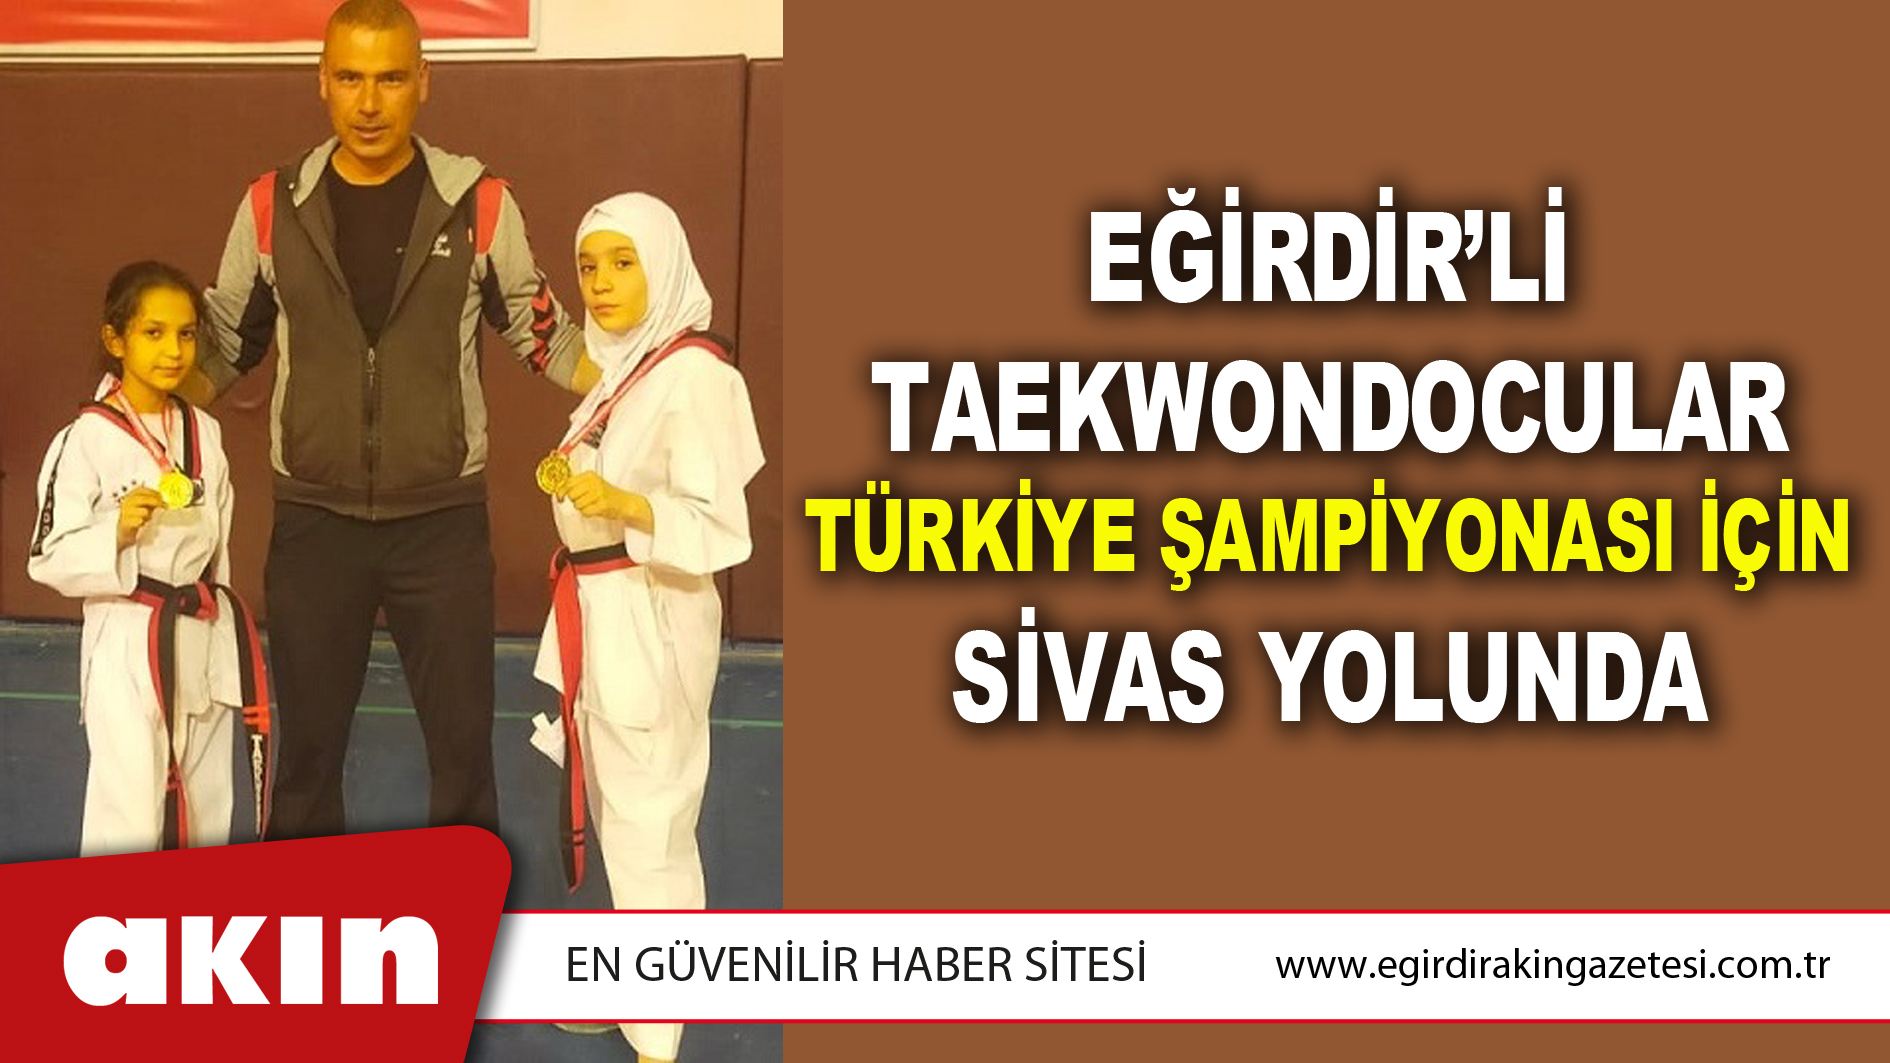 Eğirdir’li Taekwondocular Türkiye Şampiyonası İçin Sivas Yolunda